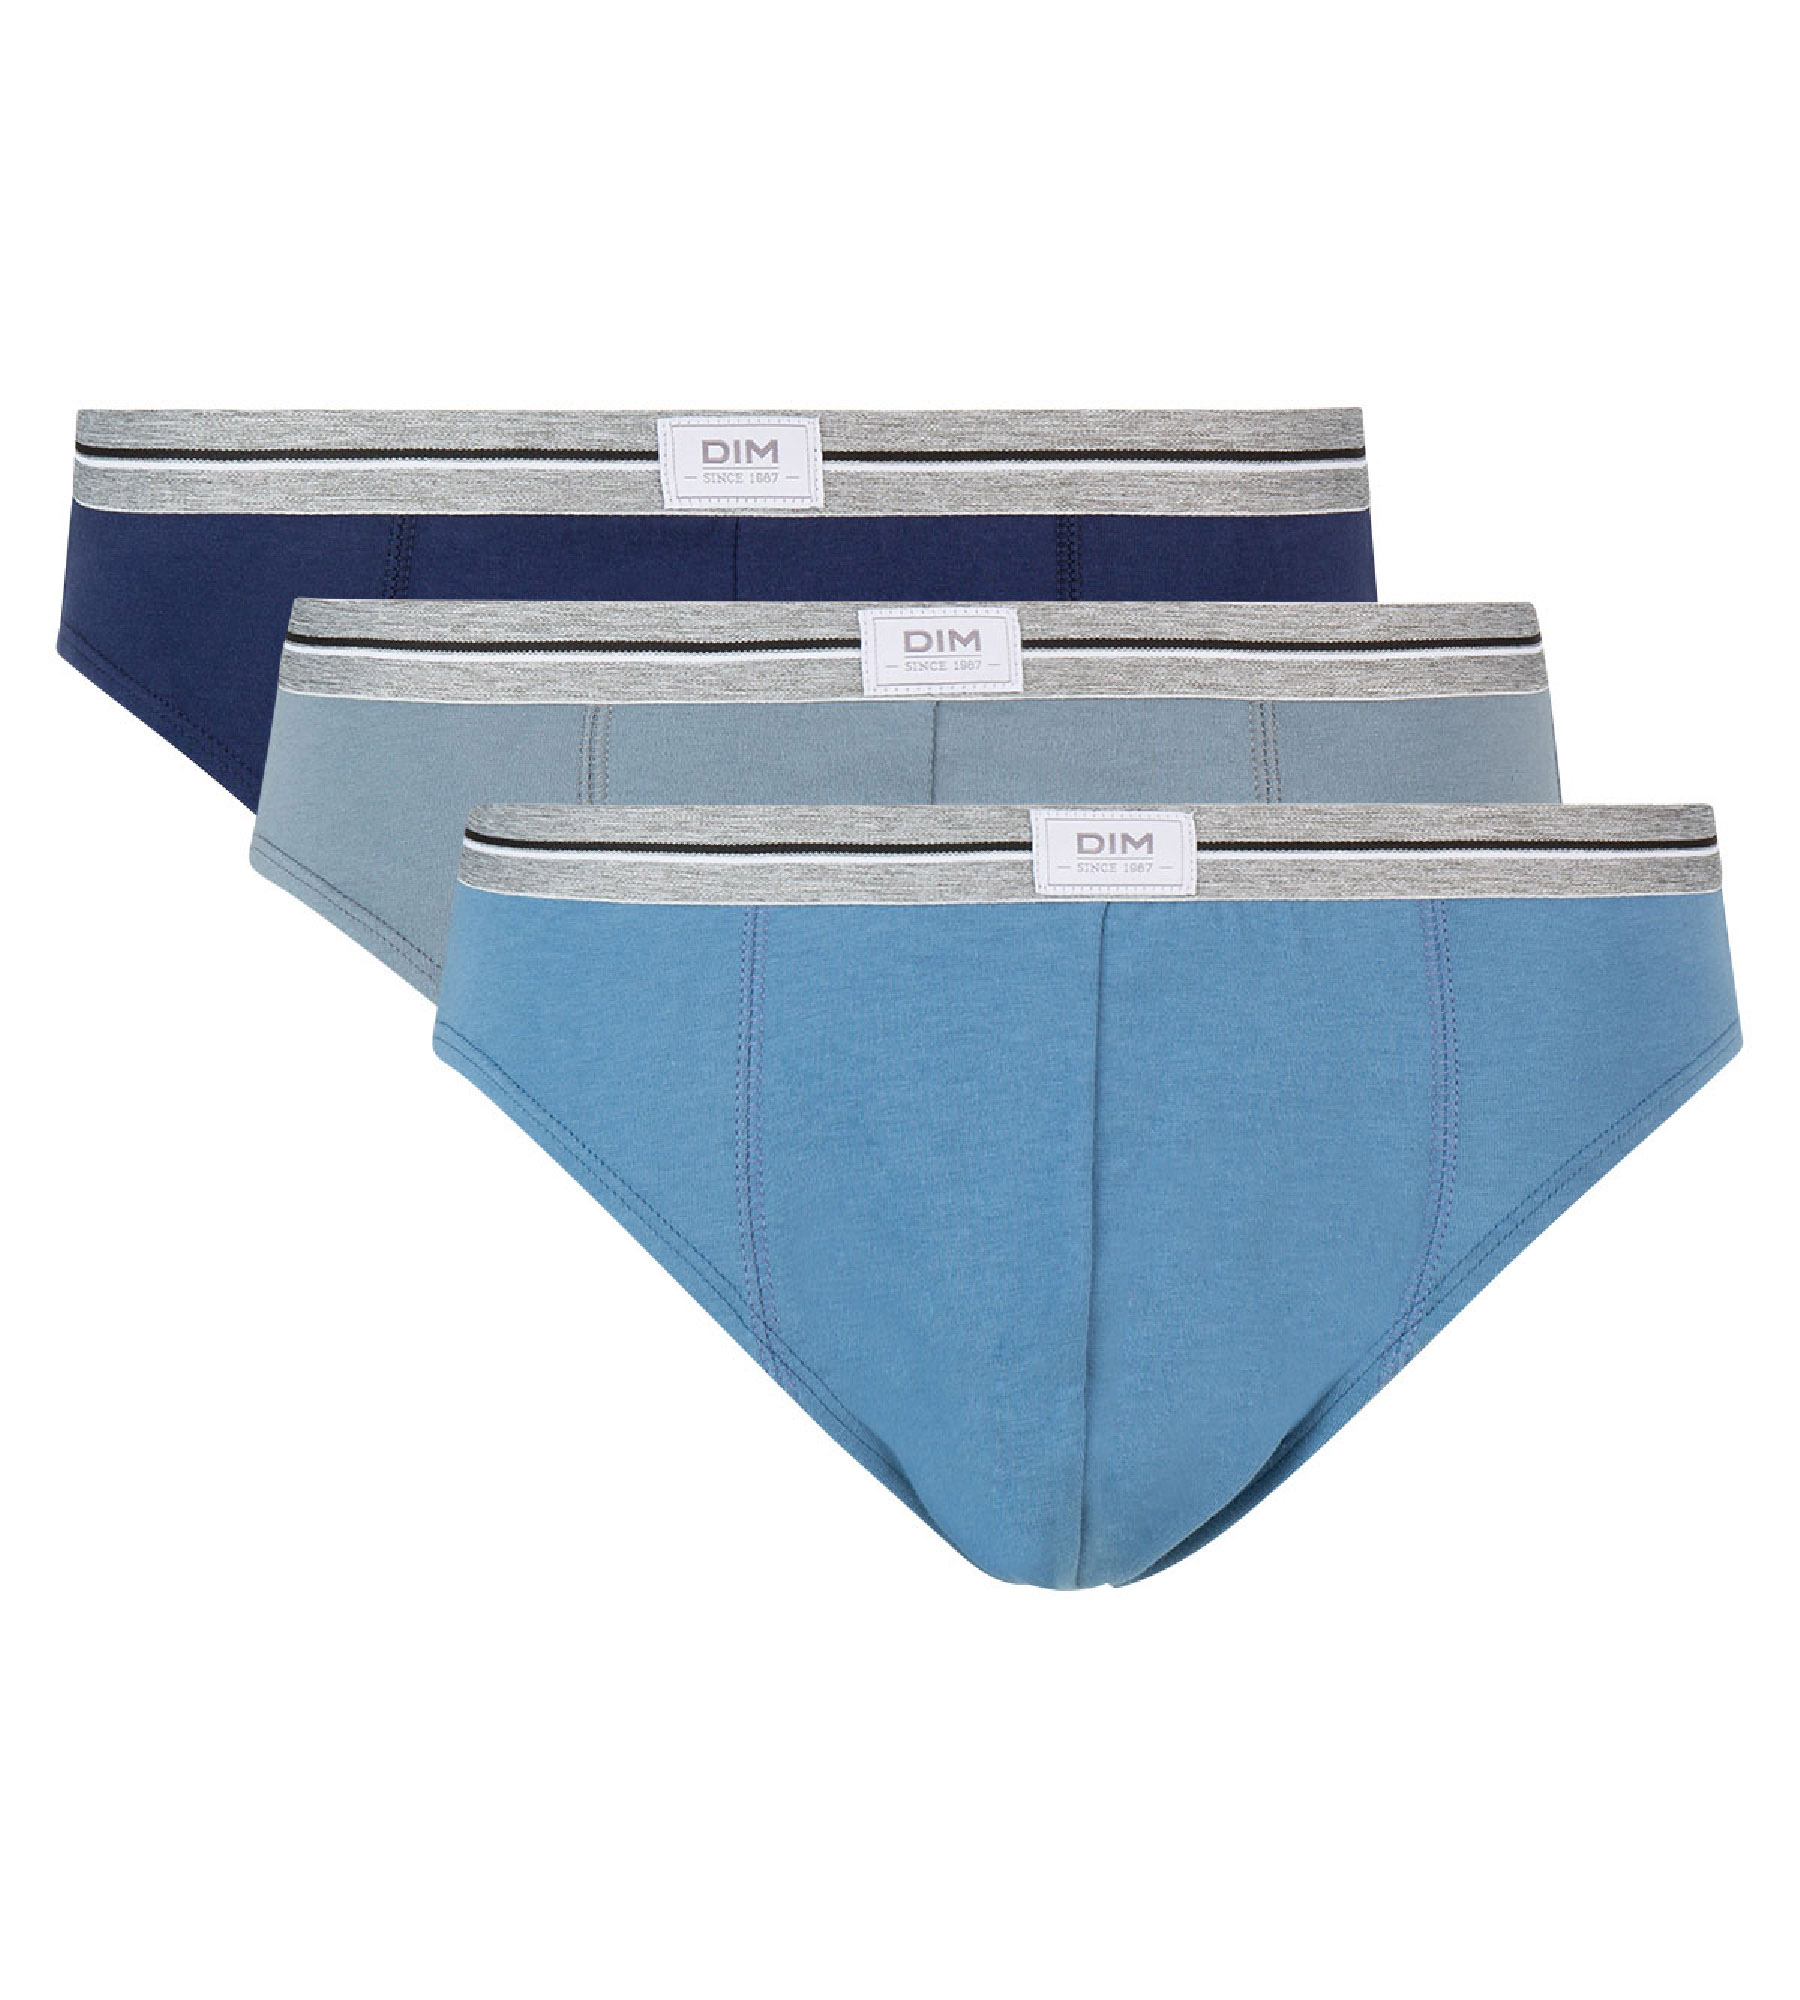 Normcore Cotton Innerwear - Blue Brief with Silver Waistband Underwear